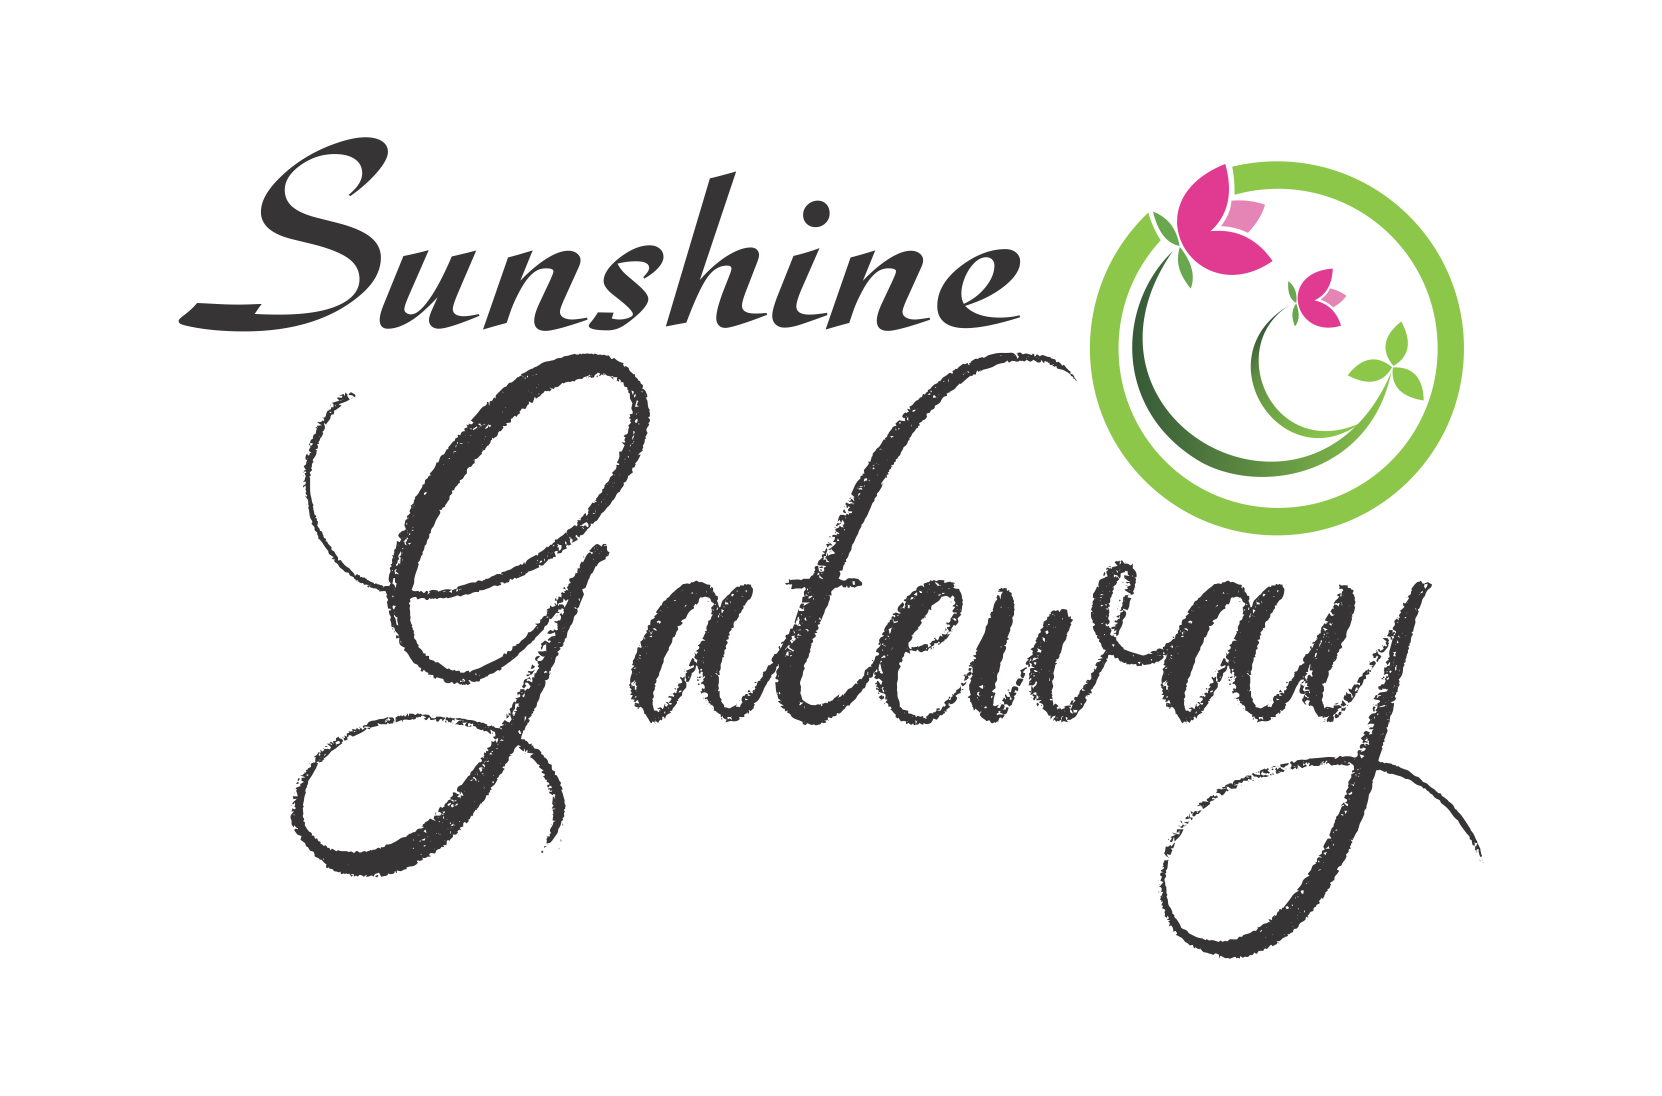 Sunshine Gateway